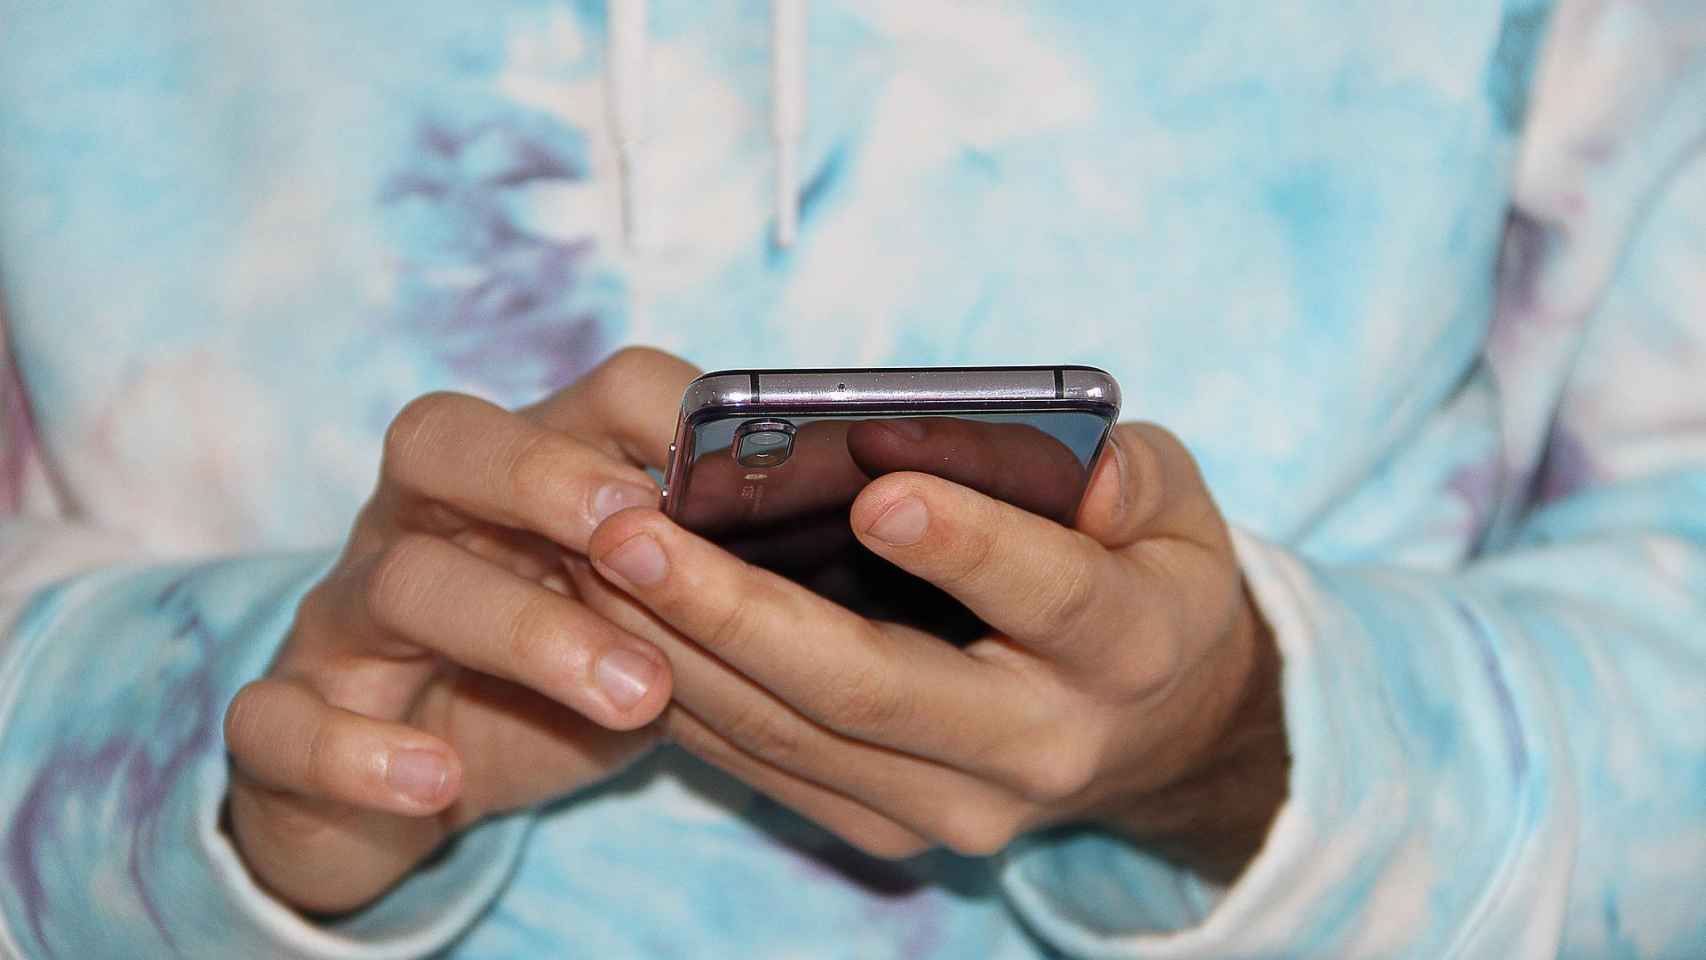 La Policía Nacional detiene en Gandía a dos jóvenes por compartir por móvil un vídeo sexual sin consentimiento.